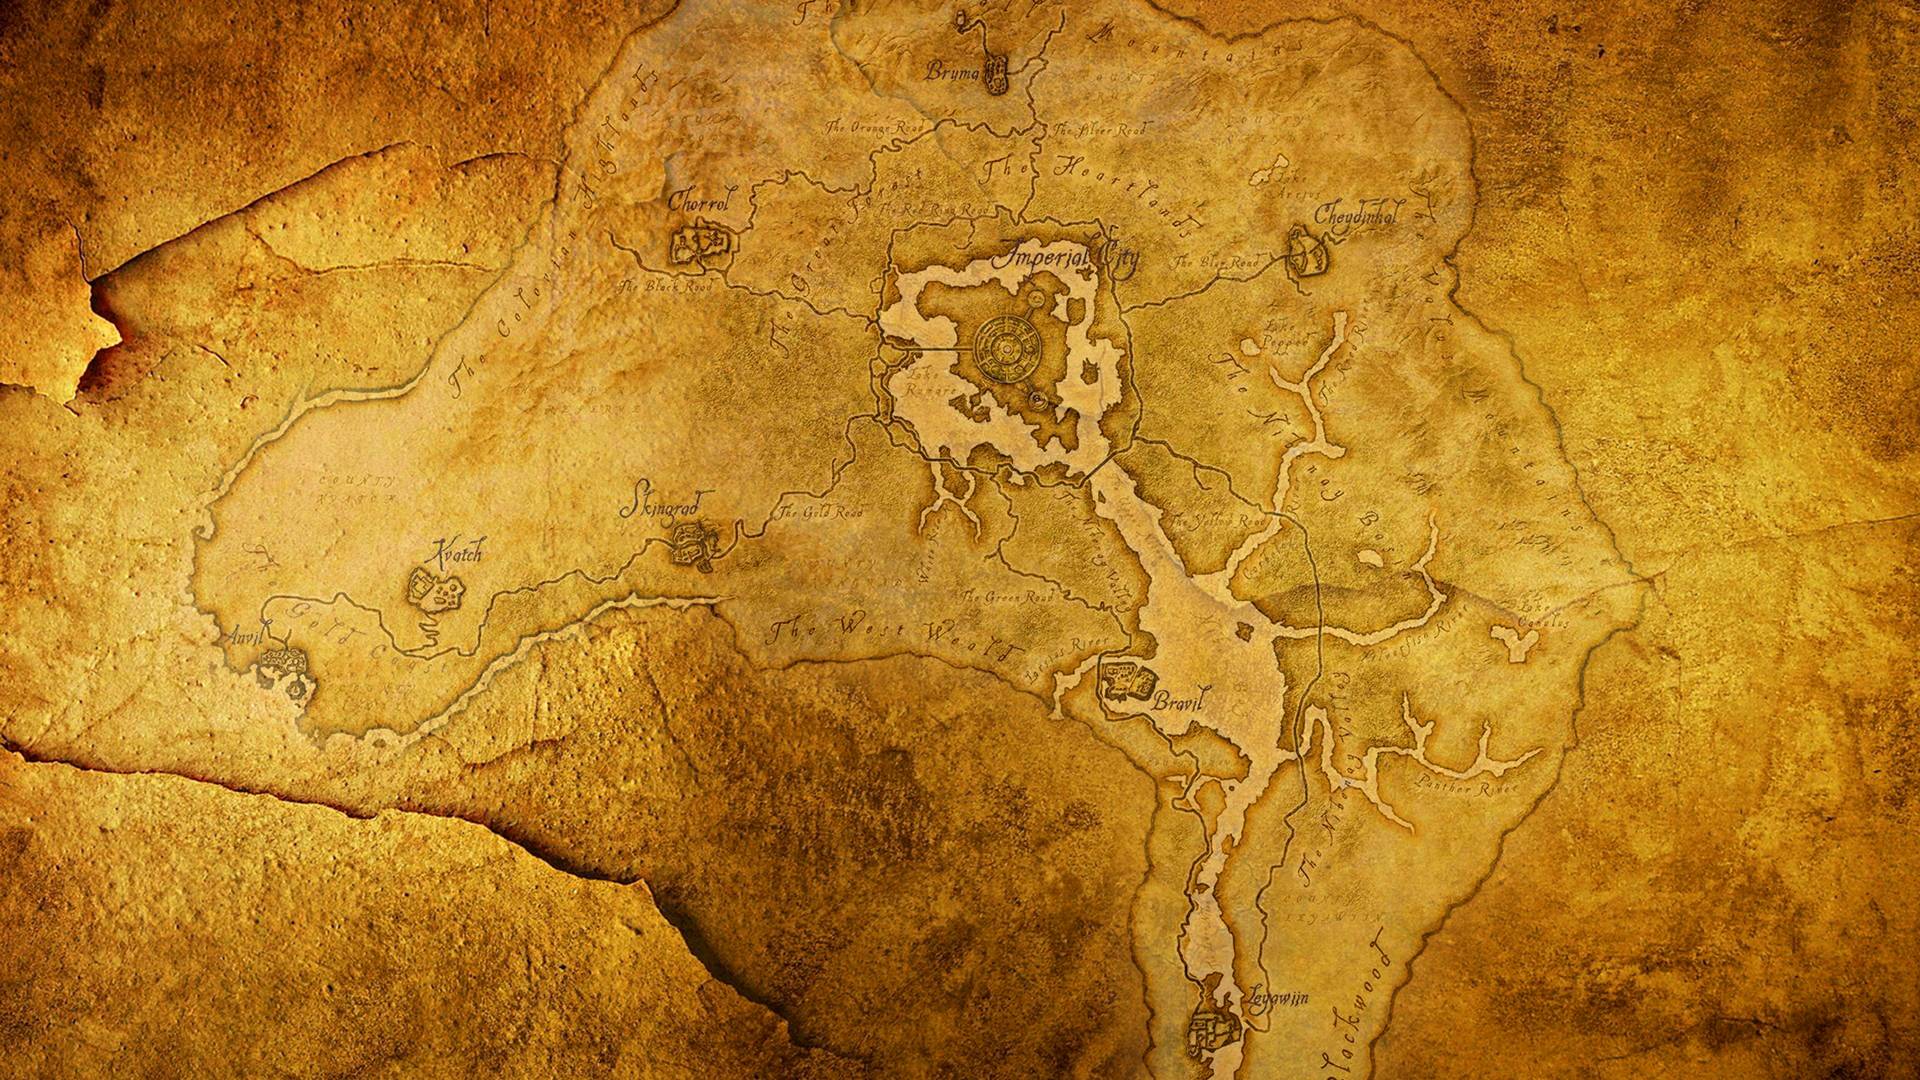 Elder Scrolls Oblivion Wallpaper Hd - HD Wallpaper 